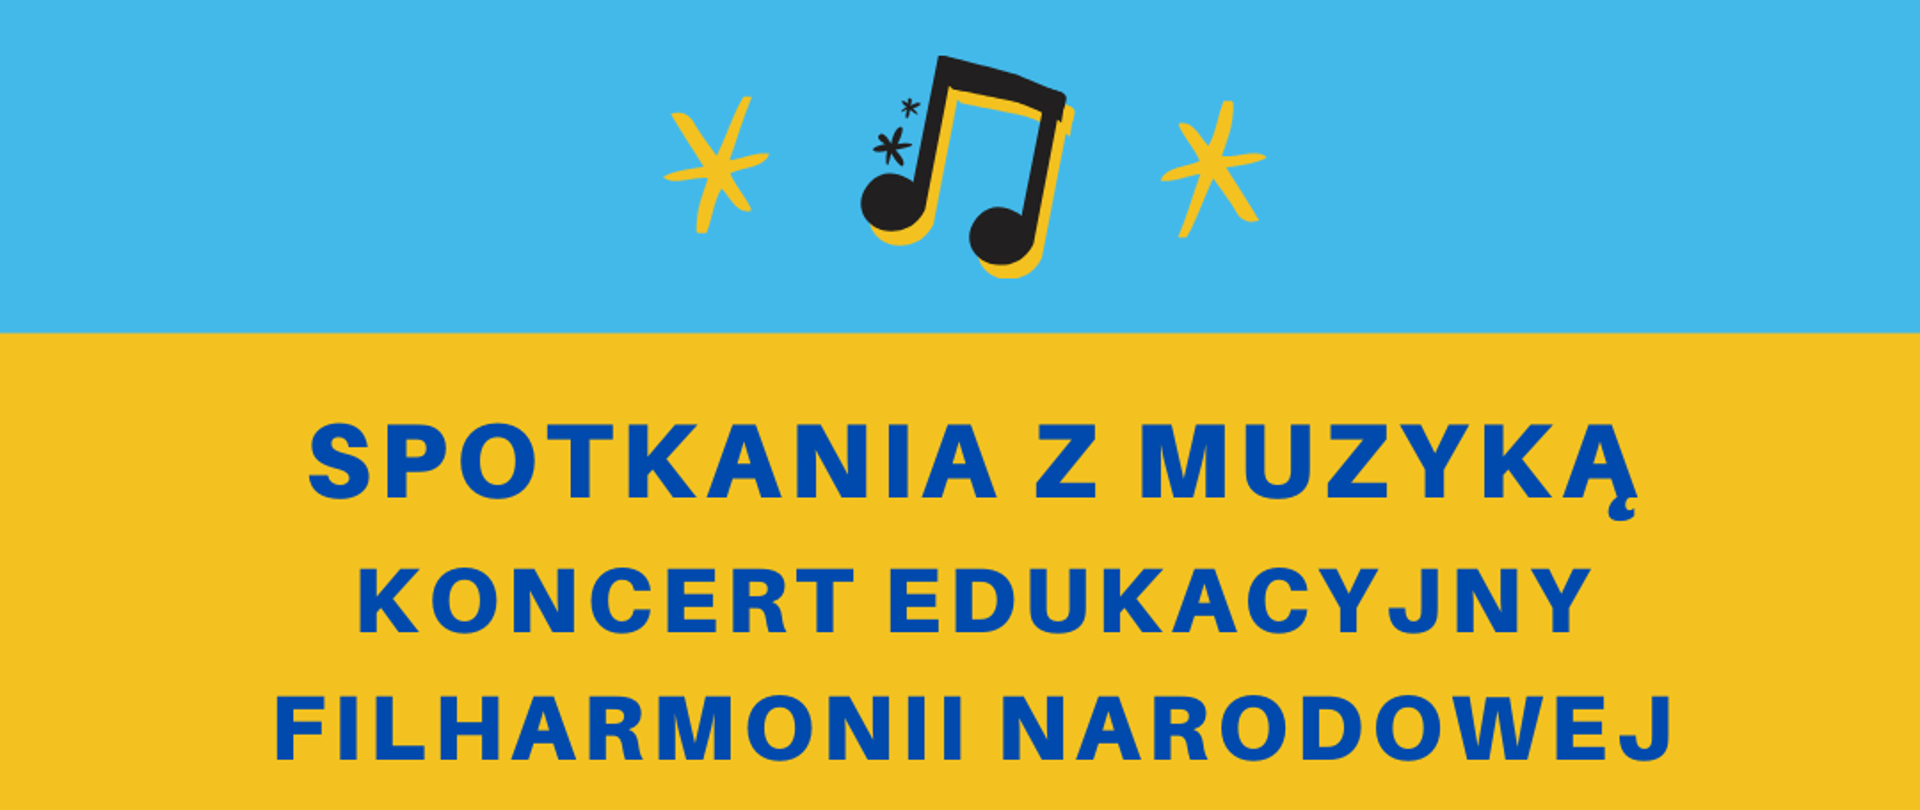 Plakat przedstawia od góry na wąskim jasnoniebieskim pasku czarne nutki, poniżej na żółtym tle na dole w kolorze czarnym klucz wiolinowy i nutki, a pośrodku plakatu ciemnoniebieski napis zapraszający na koncert Filharmonii Narodowej 16 marca 2023 r. o godz. 18:00.